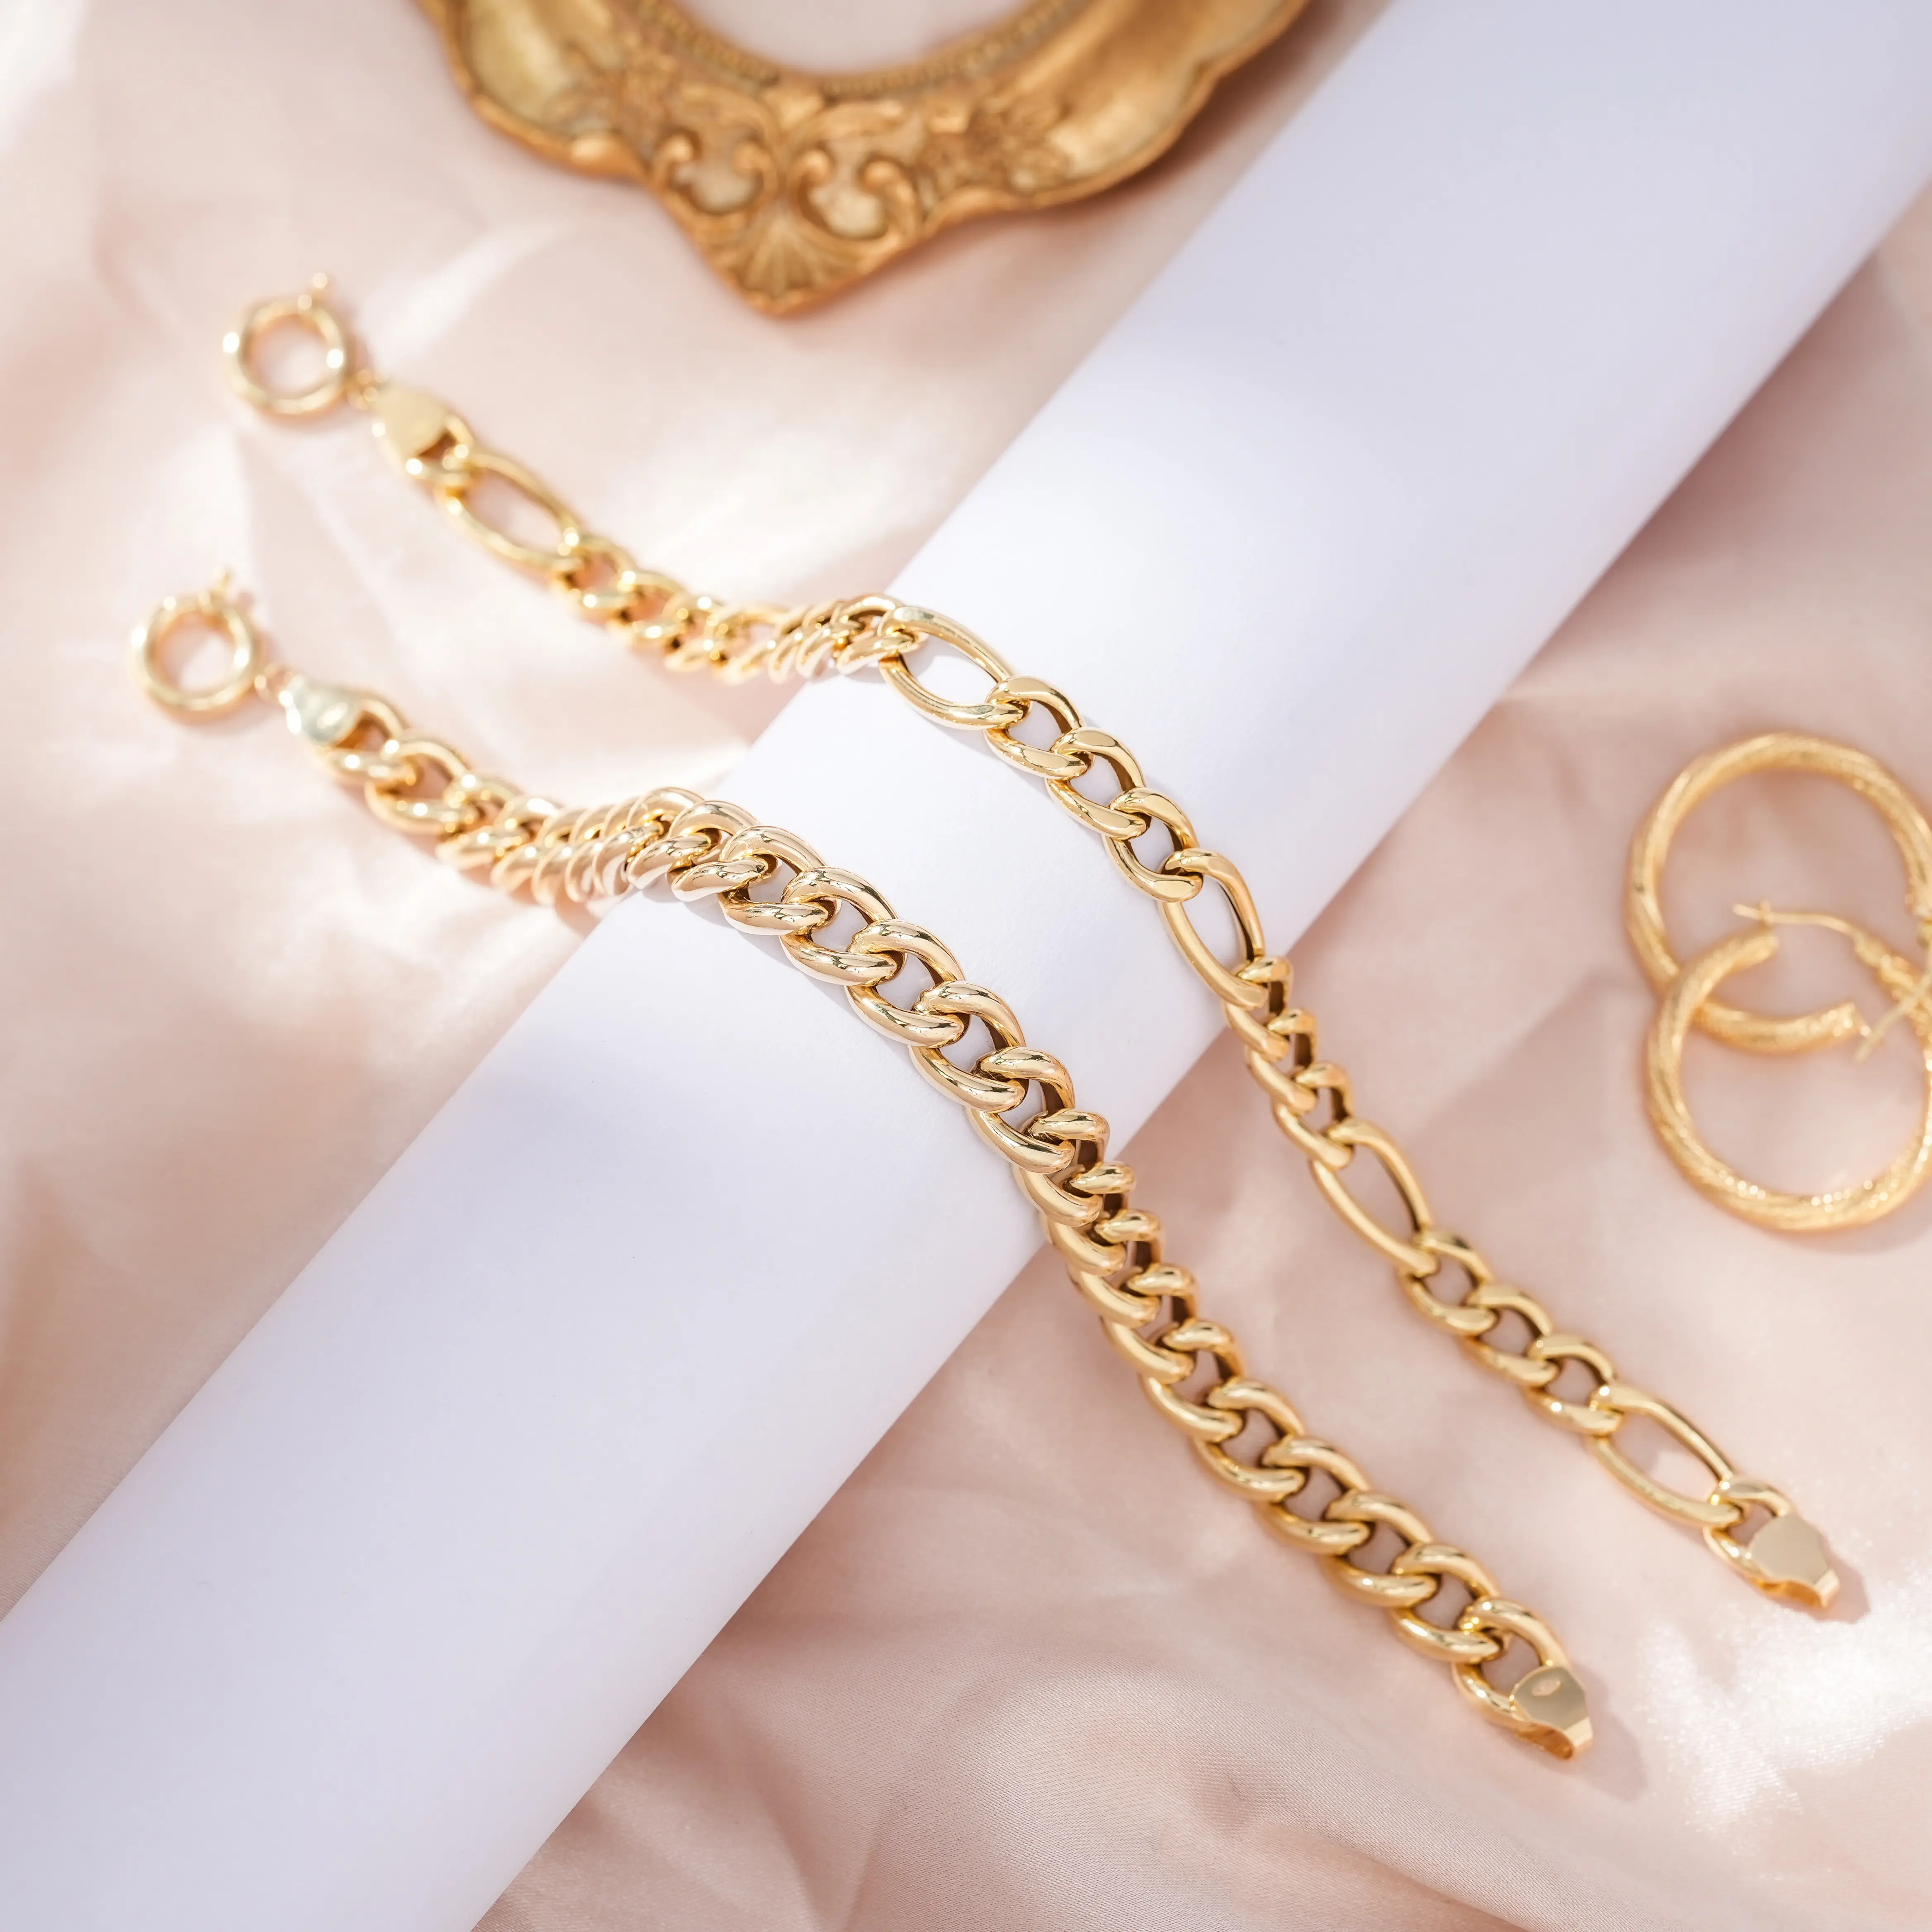 PCX gioielli all'ingrosso collegamento cubano 18k oro massiccio oro puro Figaro 8mm catena bracciale a maglie cubane per le donne uomo braccialetto